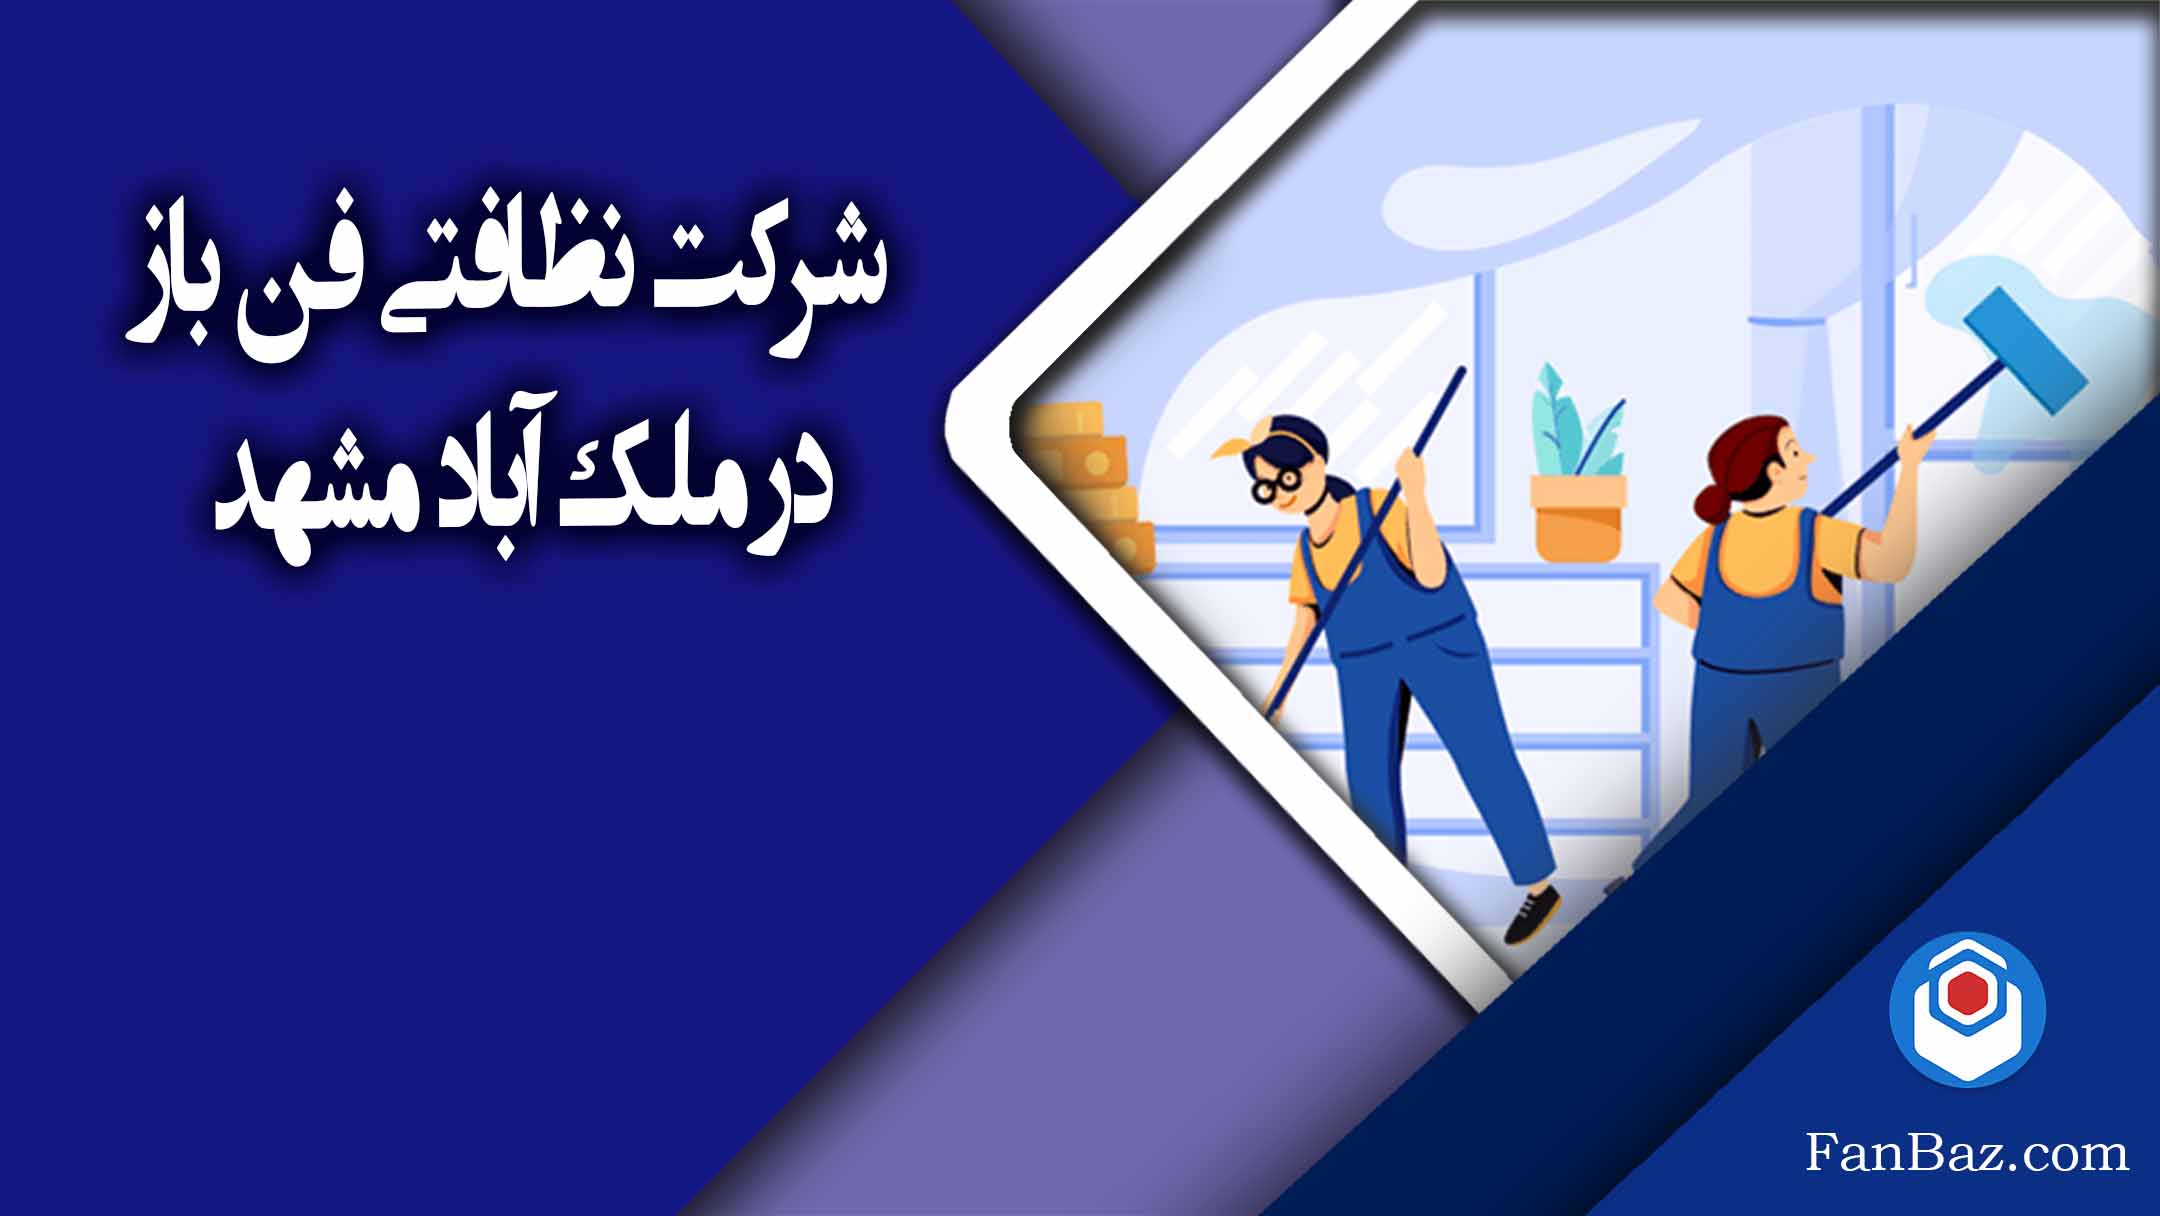 شرکت نظافتی فن باز در ملک آباد مشهد